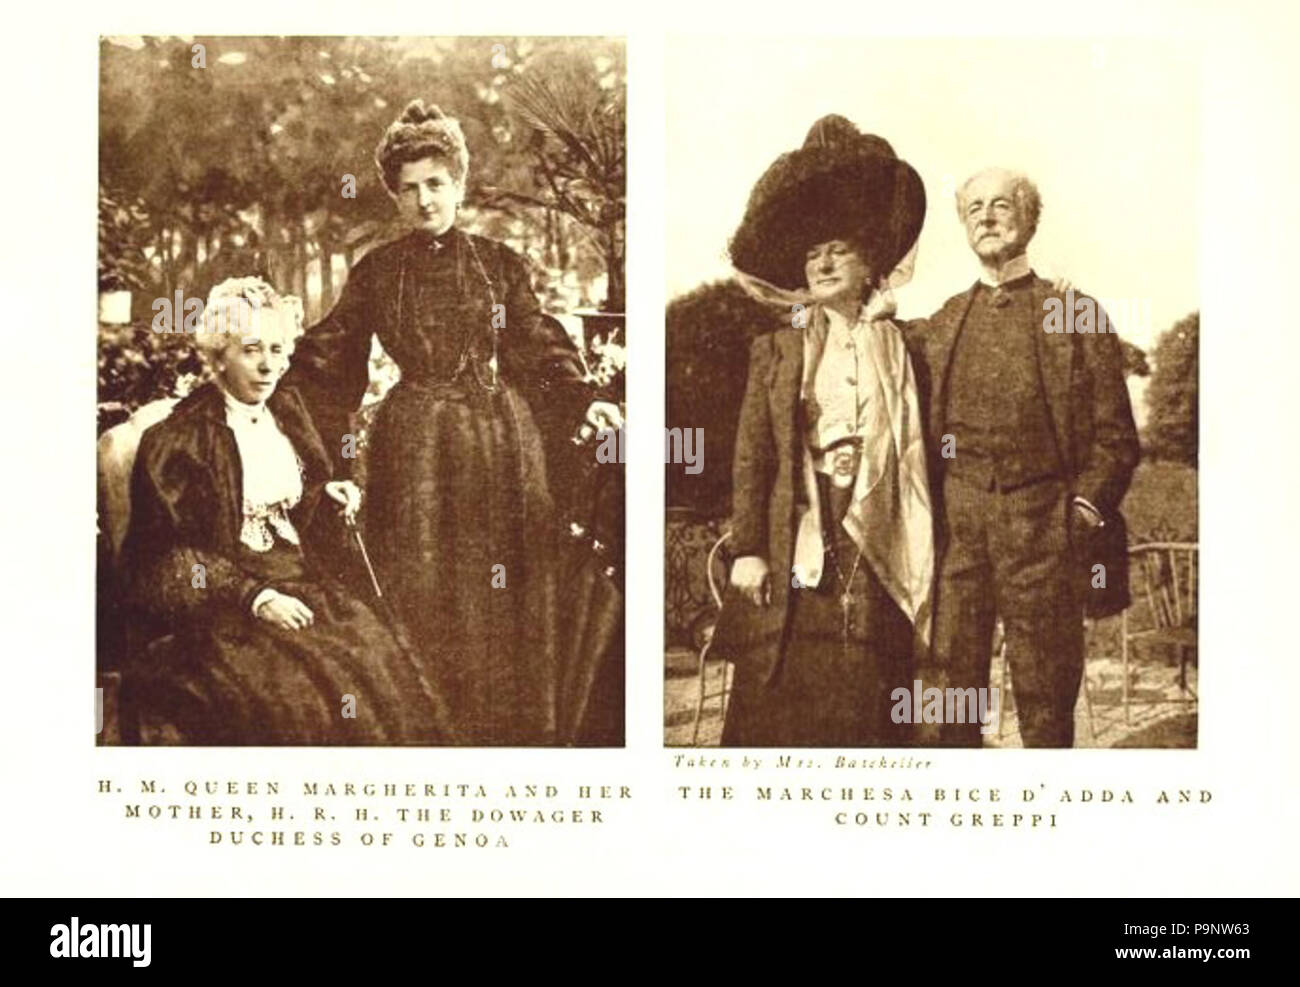 187 BATES-BATCHELLER (1911) p240 - H. M. la regina Margherita e sua madre, H. R. H. la Duchessa Dowager di Genova Foto Stock